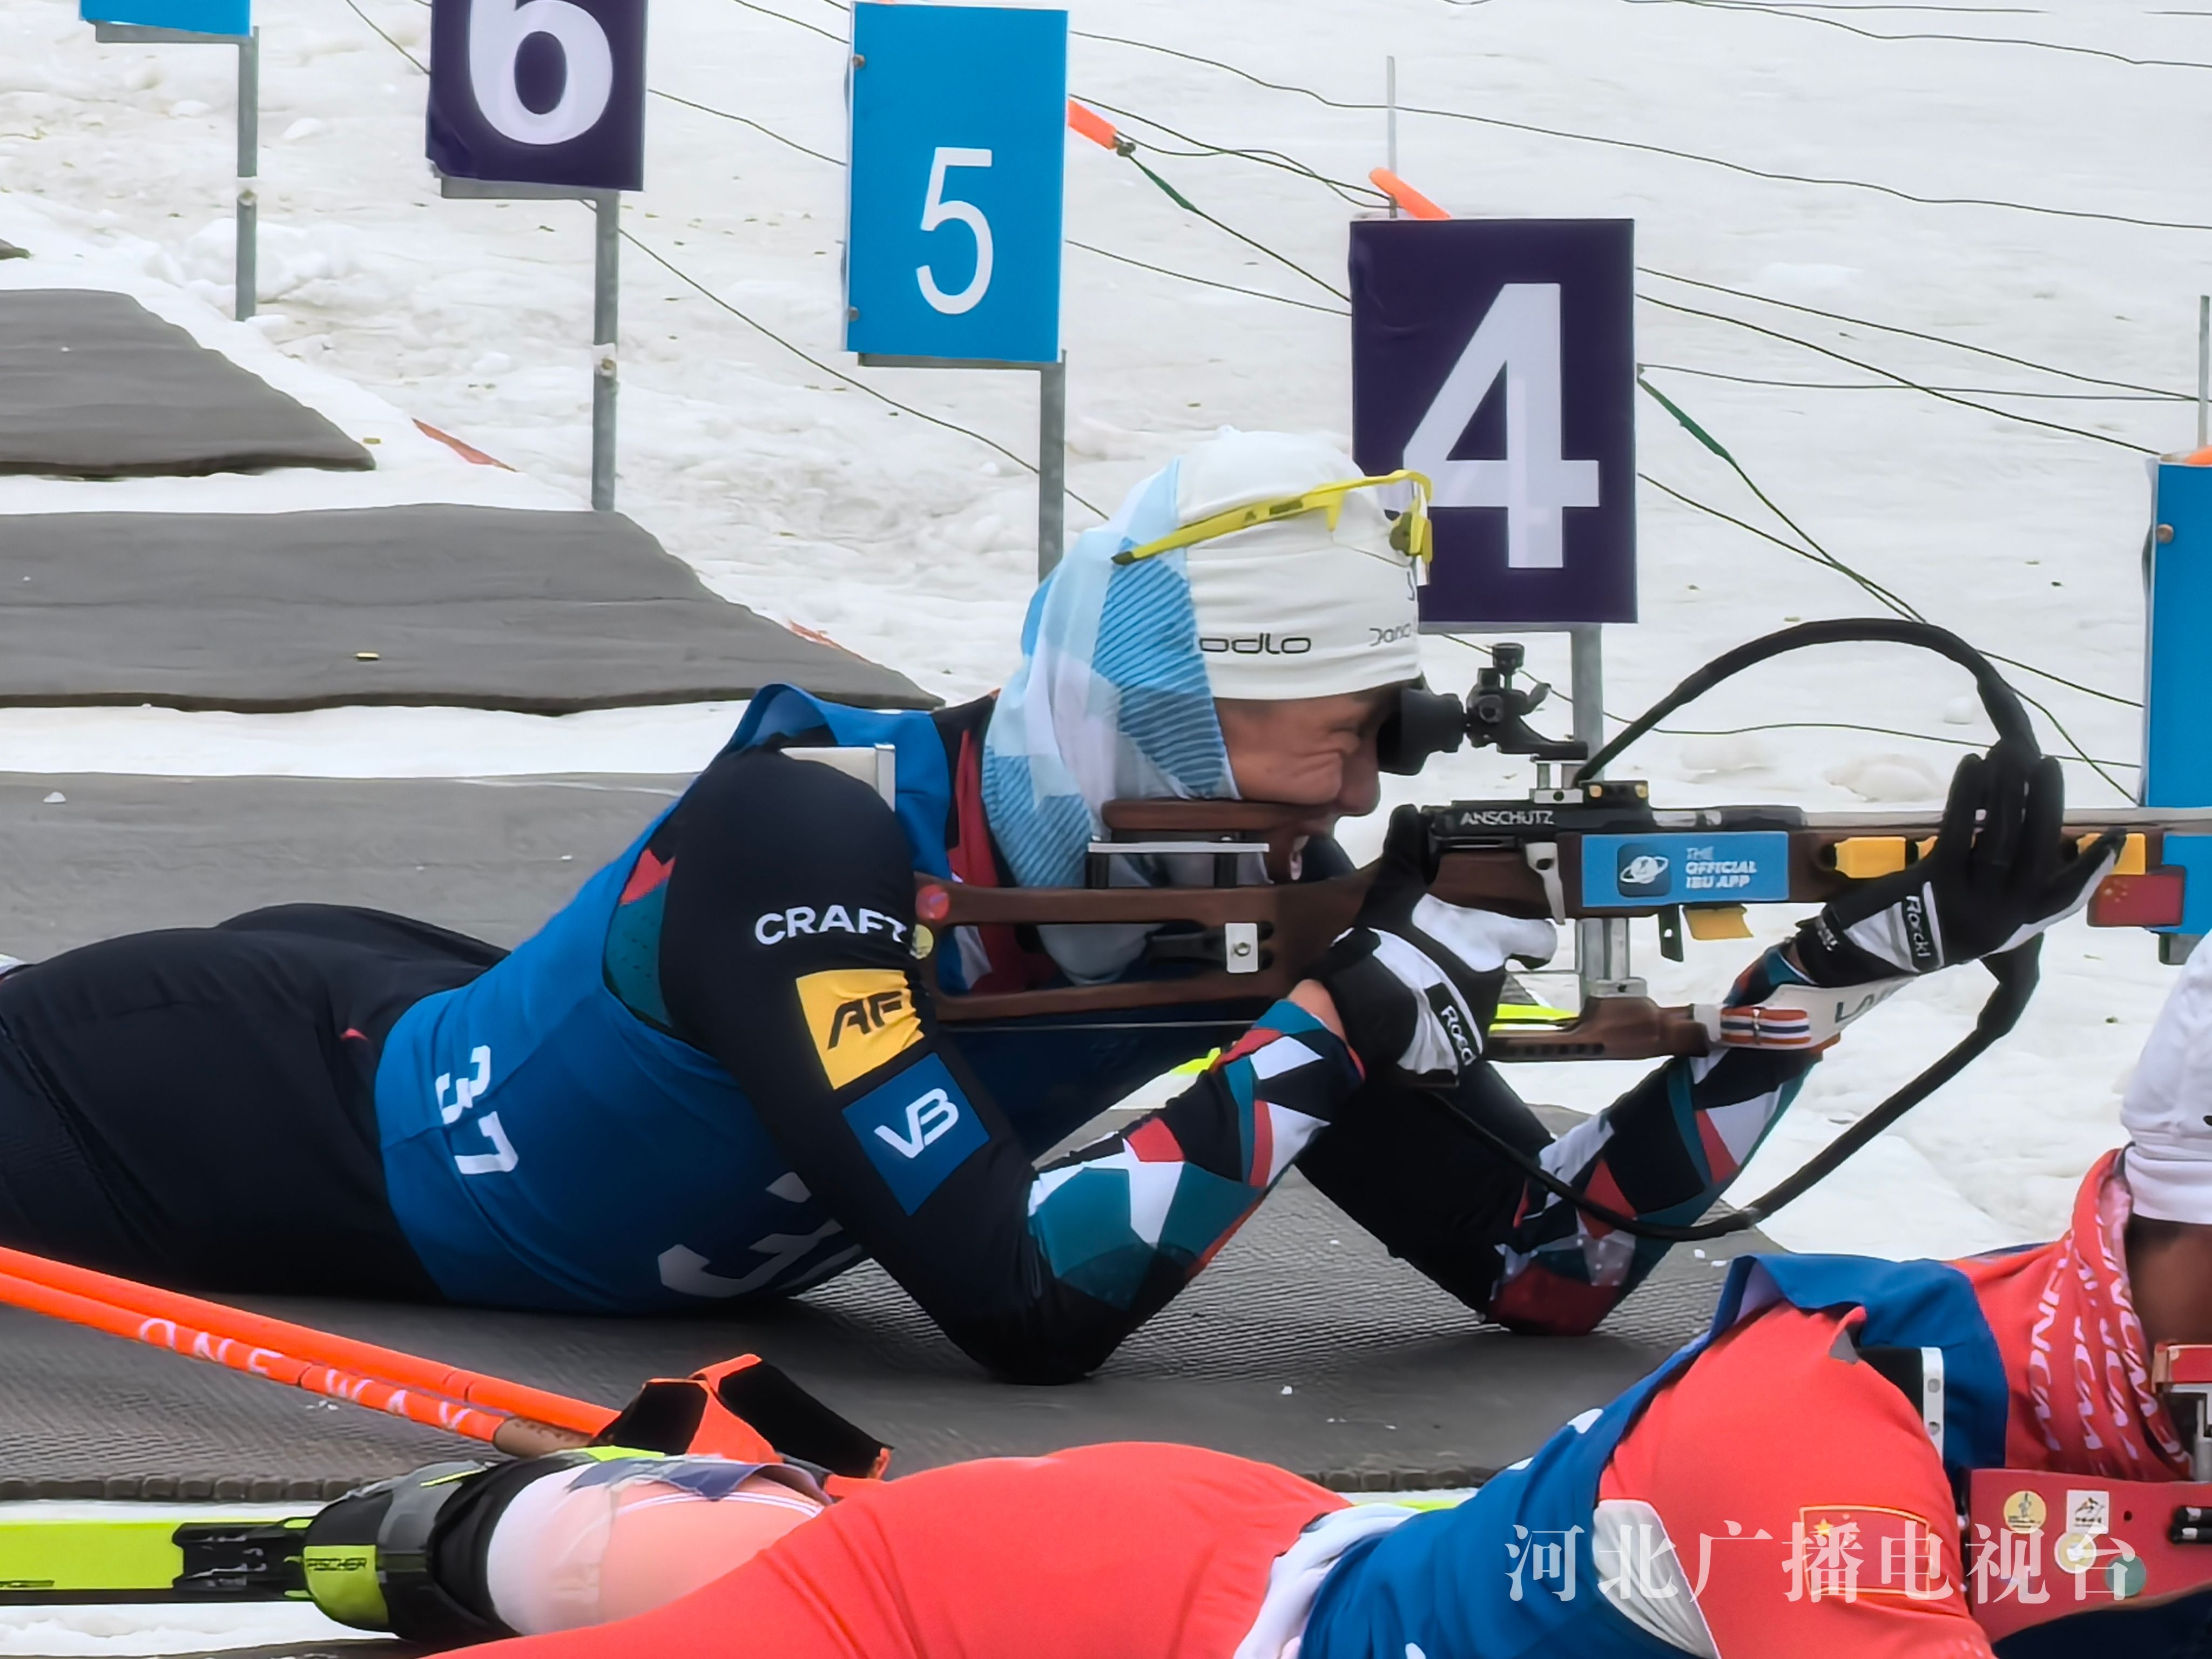 聚焦“十四冬”丨河北运动员闫星元获冬季两项公开组男子20公里个人比赛金牌